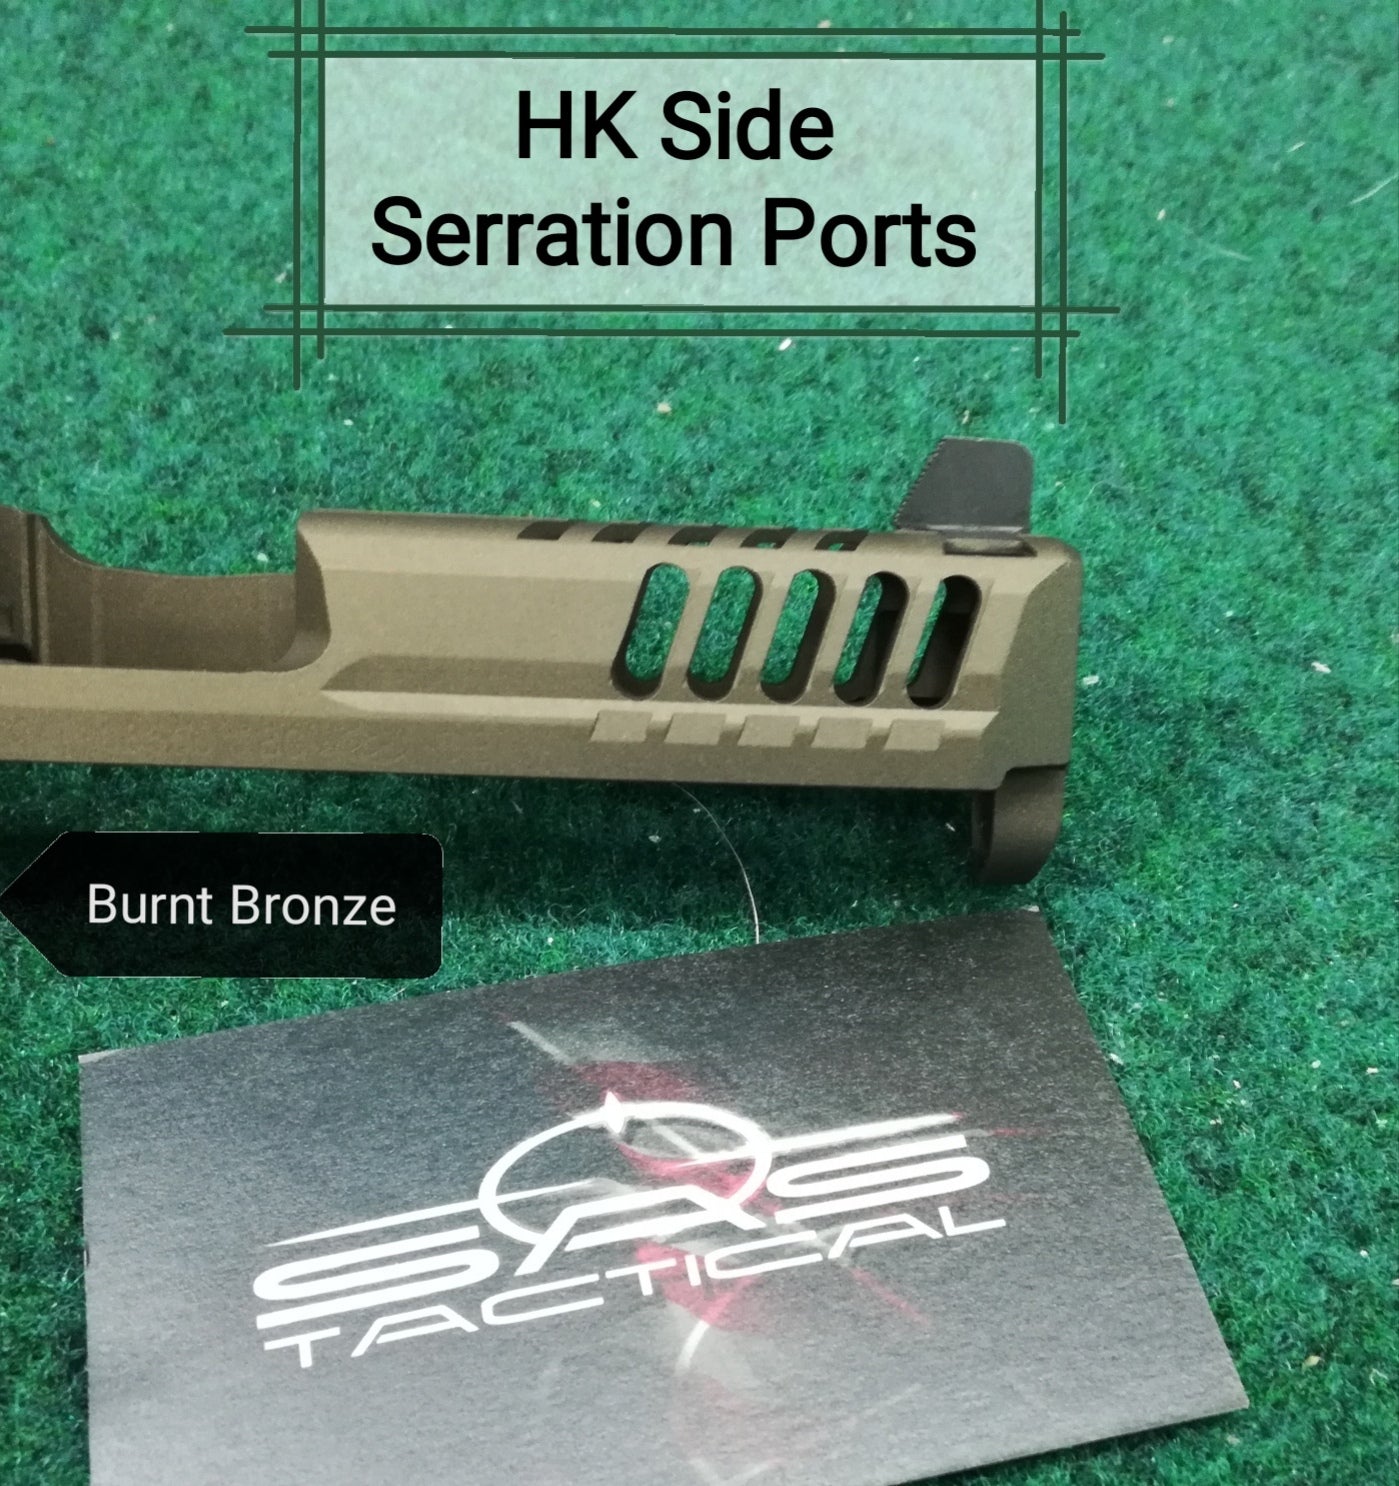 HK - Slide Milling Service - Side Serration Ports